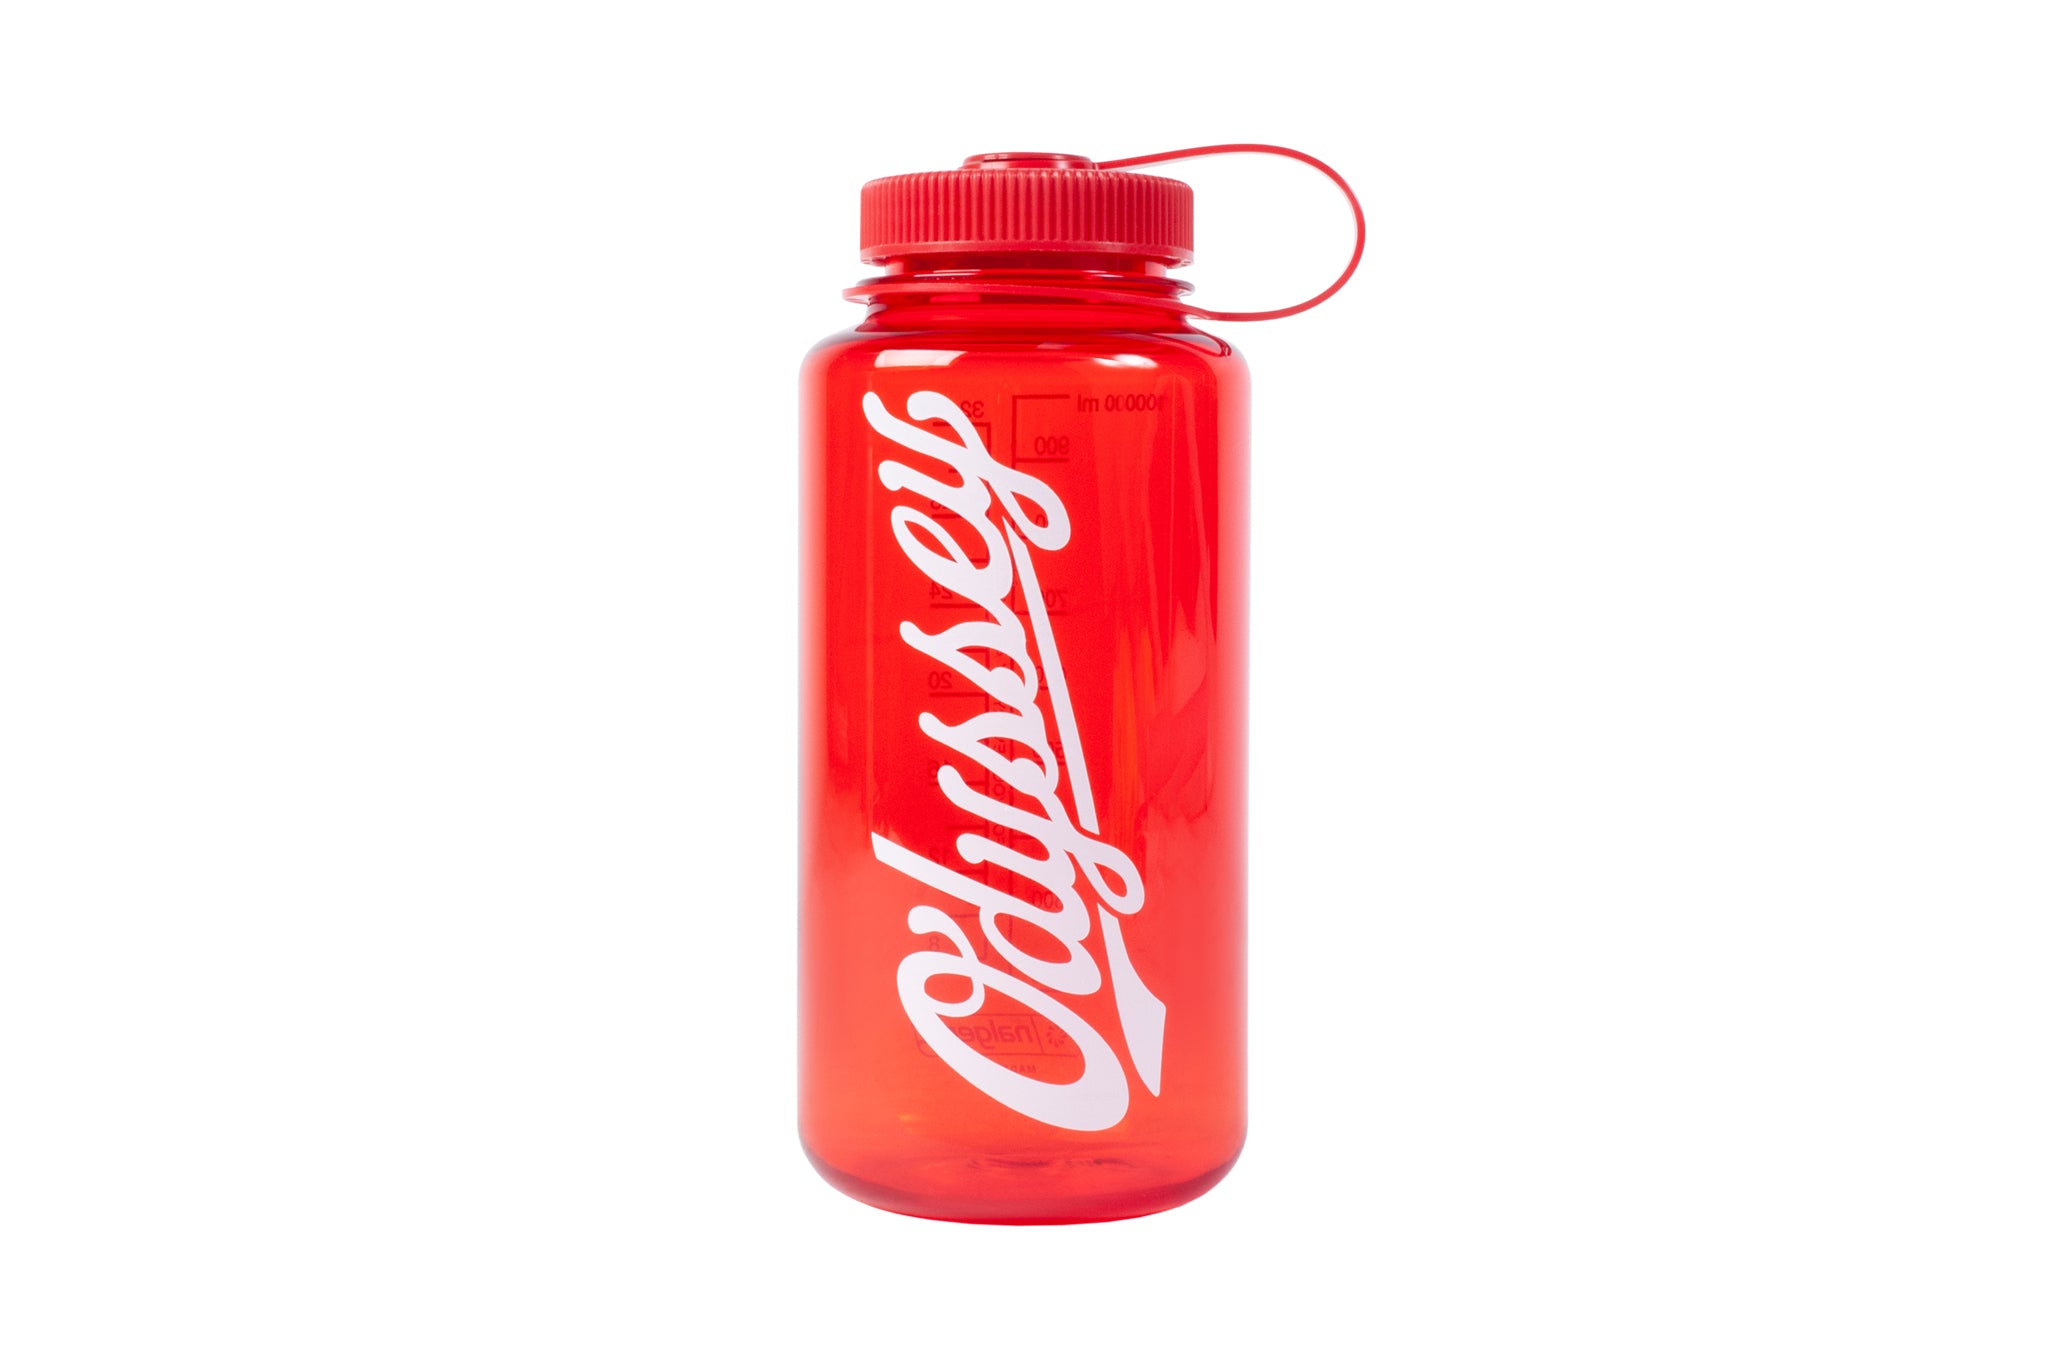 Red Boeing Logo Water Bottle